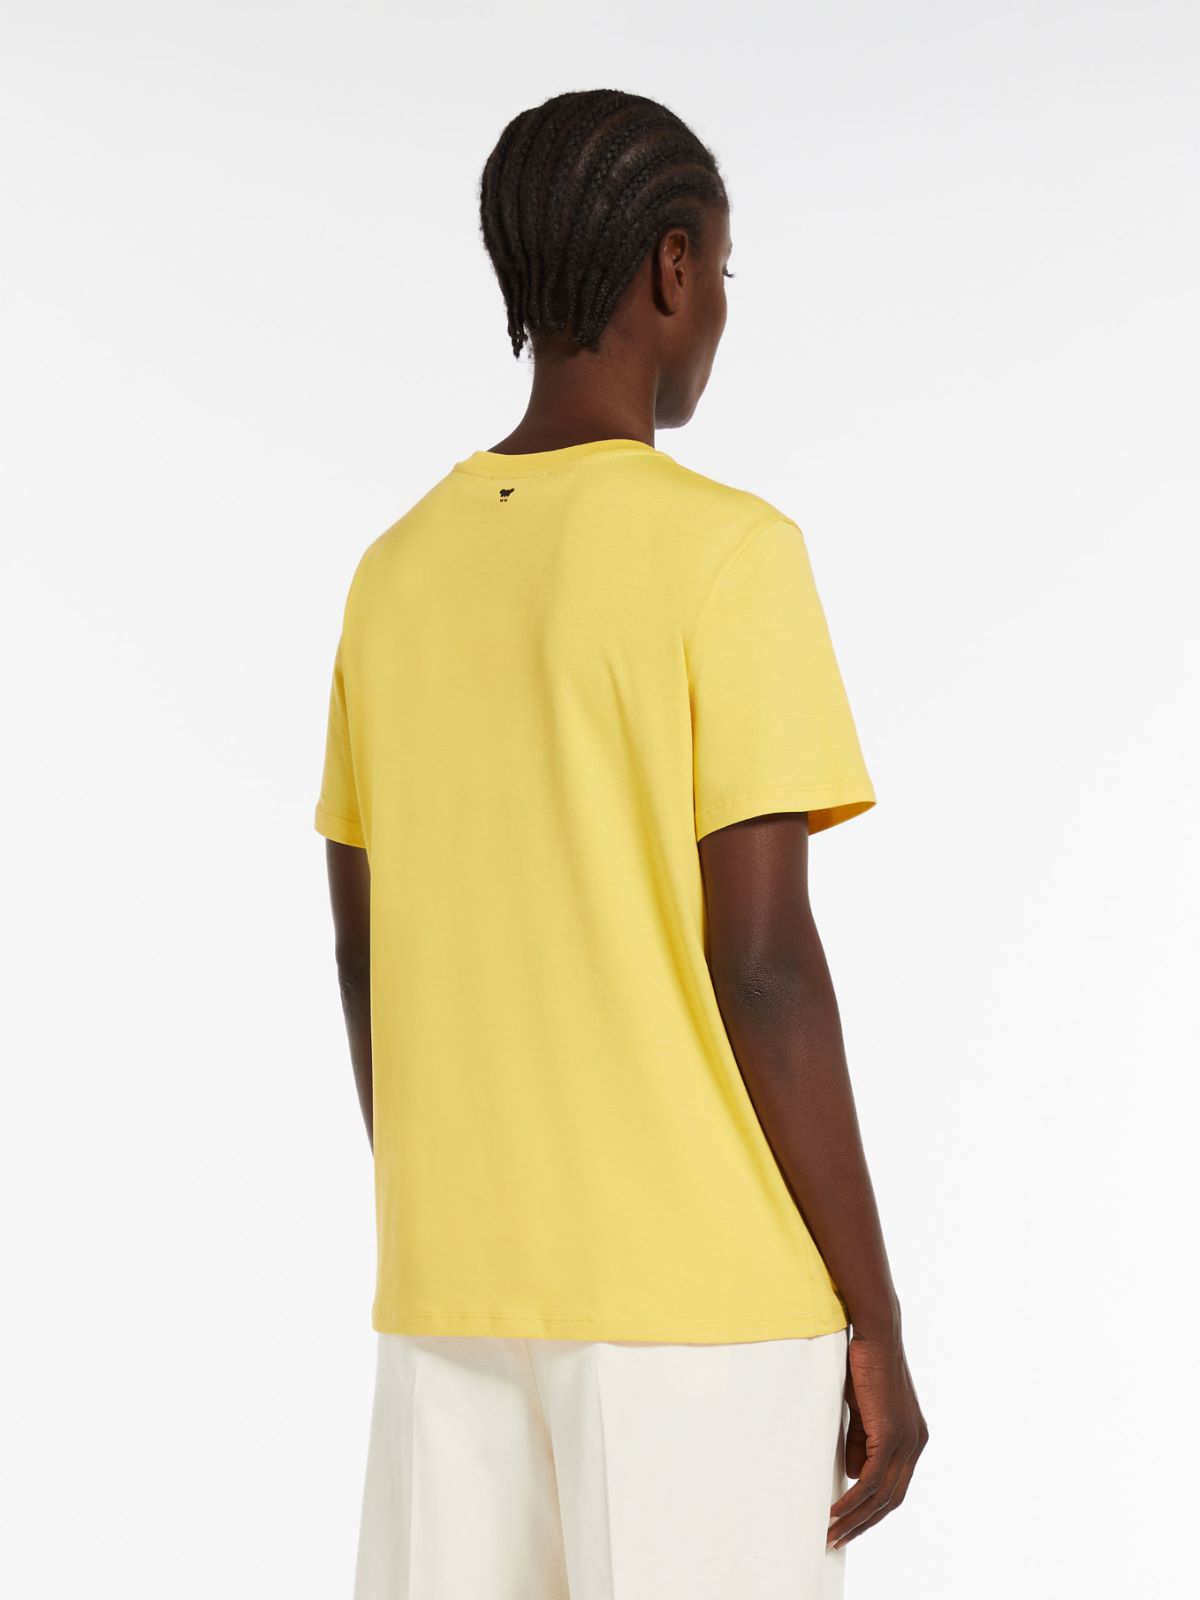 Printed jersey T-shirt, yellow | Weekend Max Mara